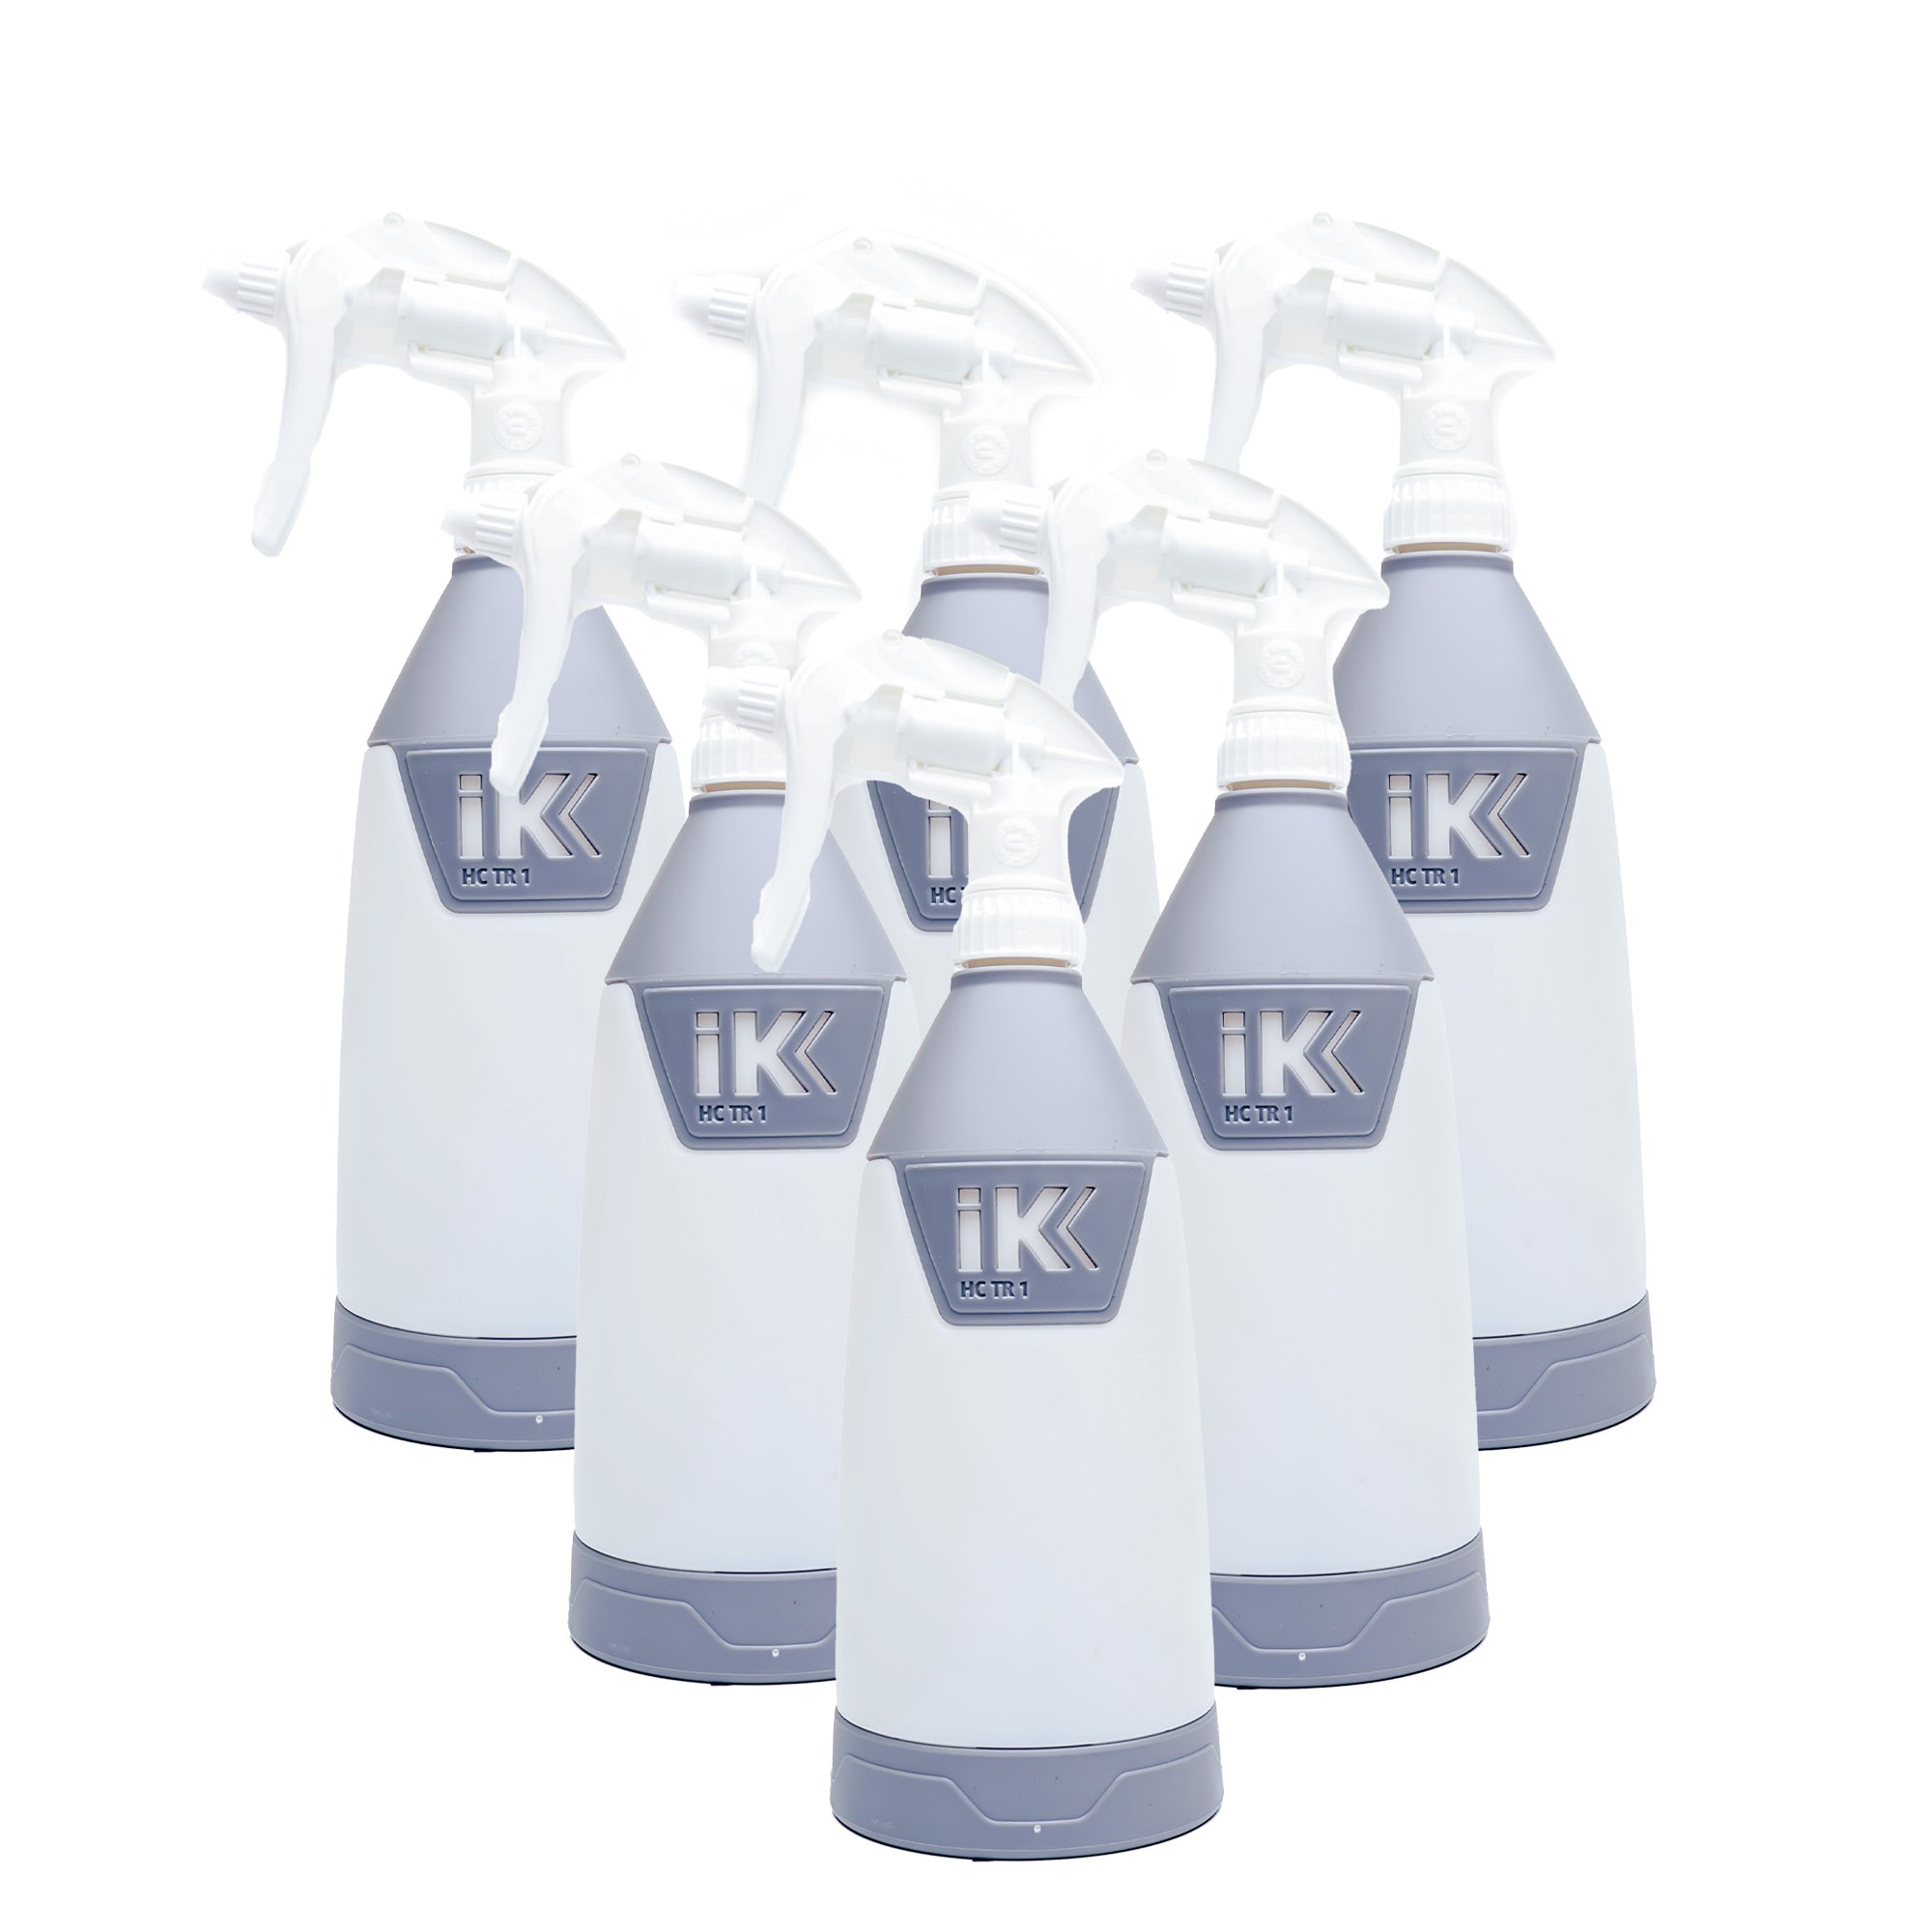 IK Multi TR1 Sprayer Bottle/35oz.